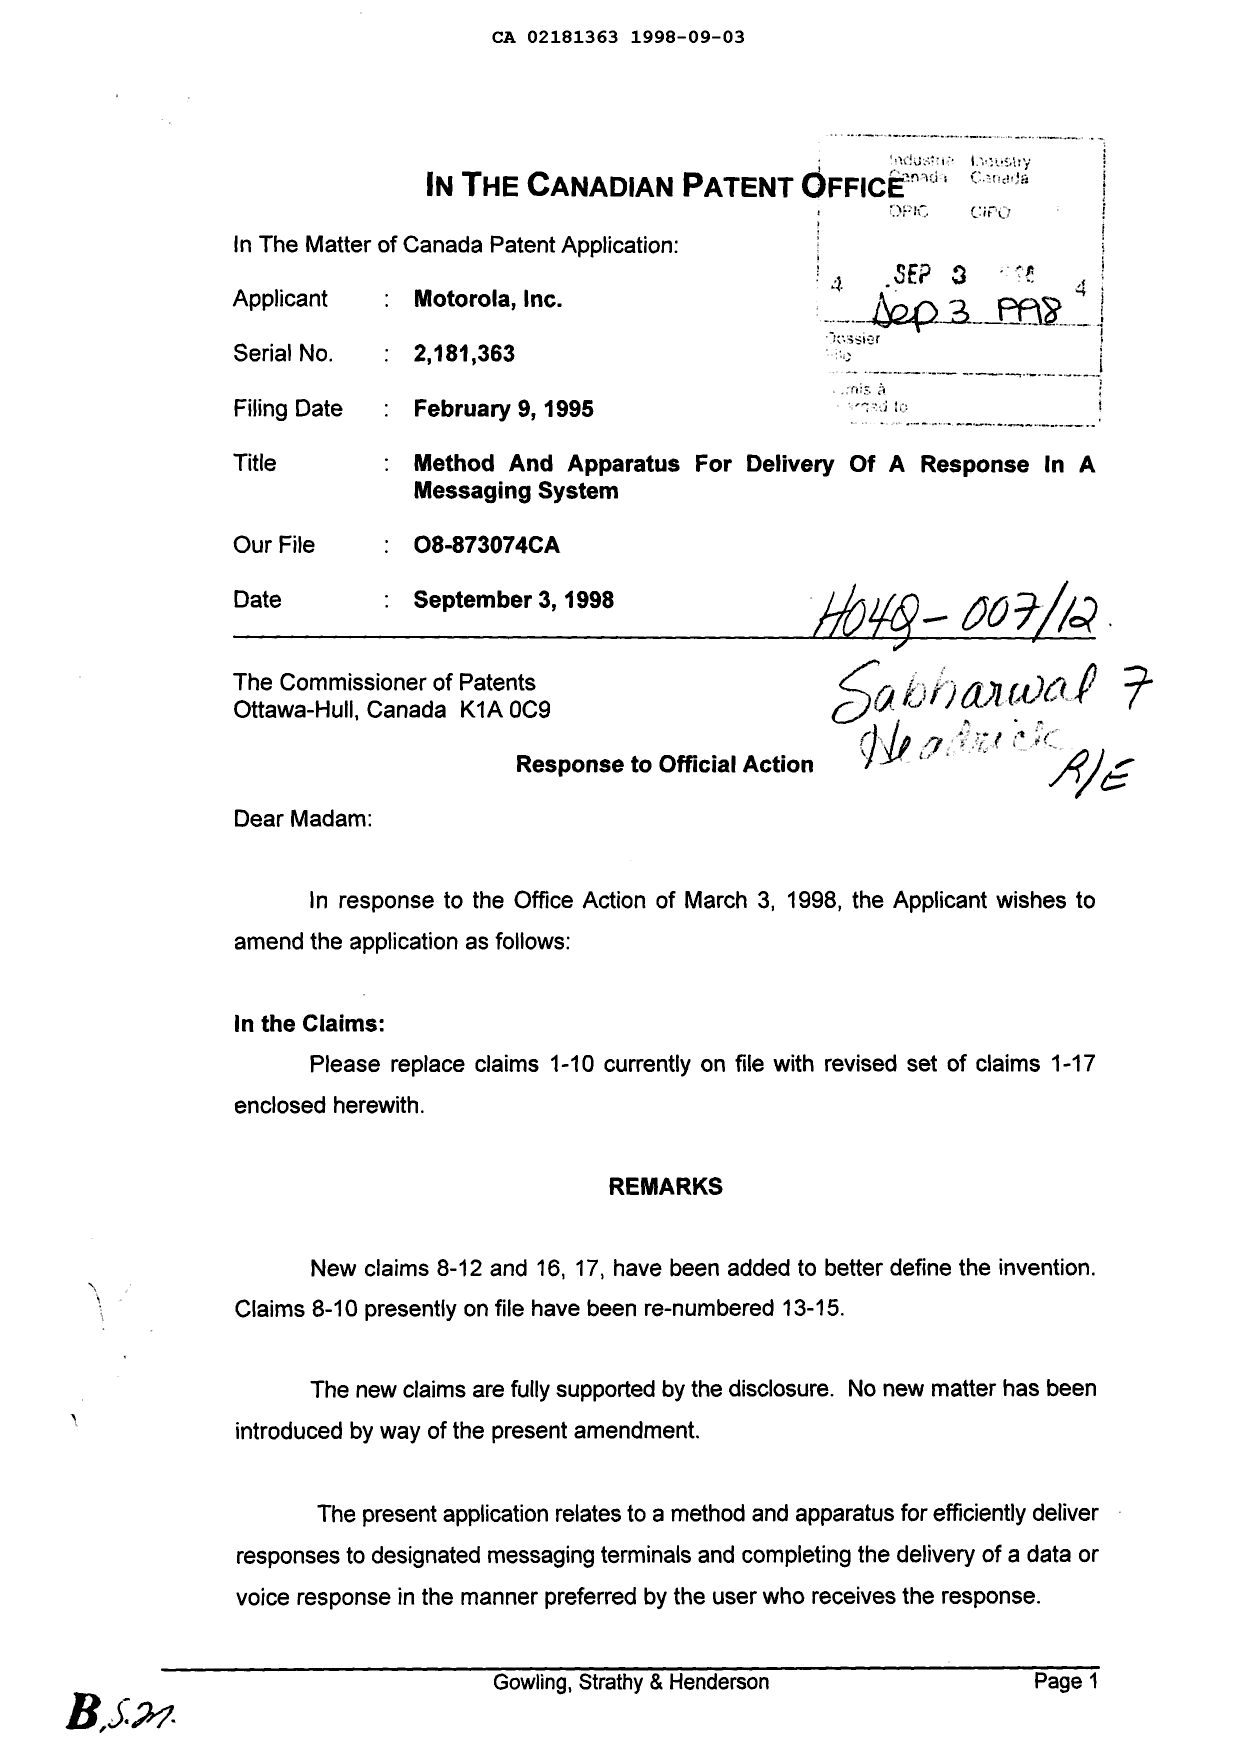 Document de brevet canadien 2181363. Poursuite-Amendment 19980903. Image 1 de 3